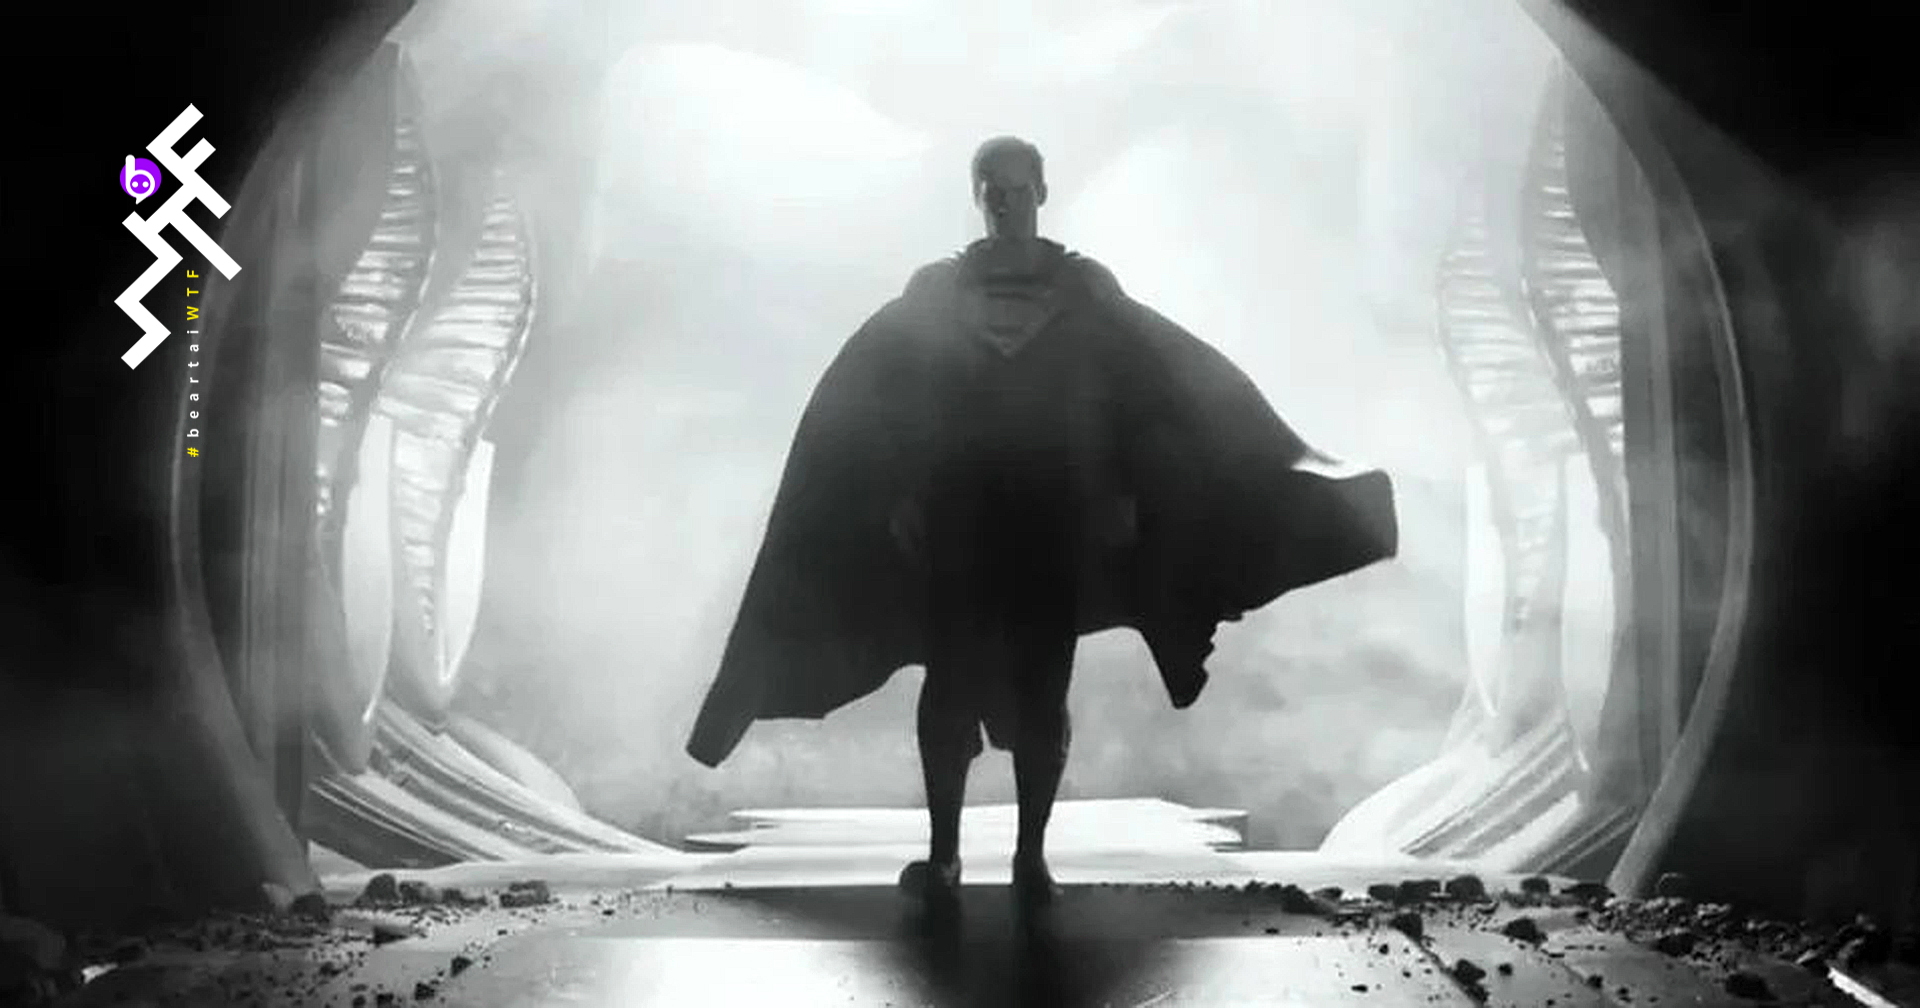 ตัวอย่าง Justice League เวอร์ชัน Snyder Cut ล่าสุด : เผยโฉม Darkseid และ Superman มากขึ้น